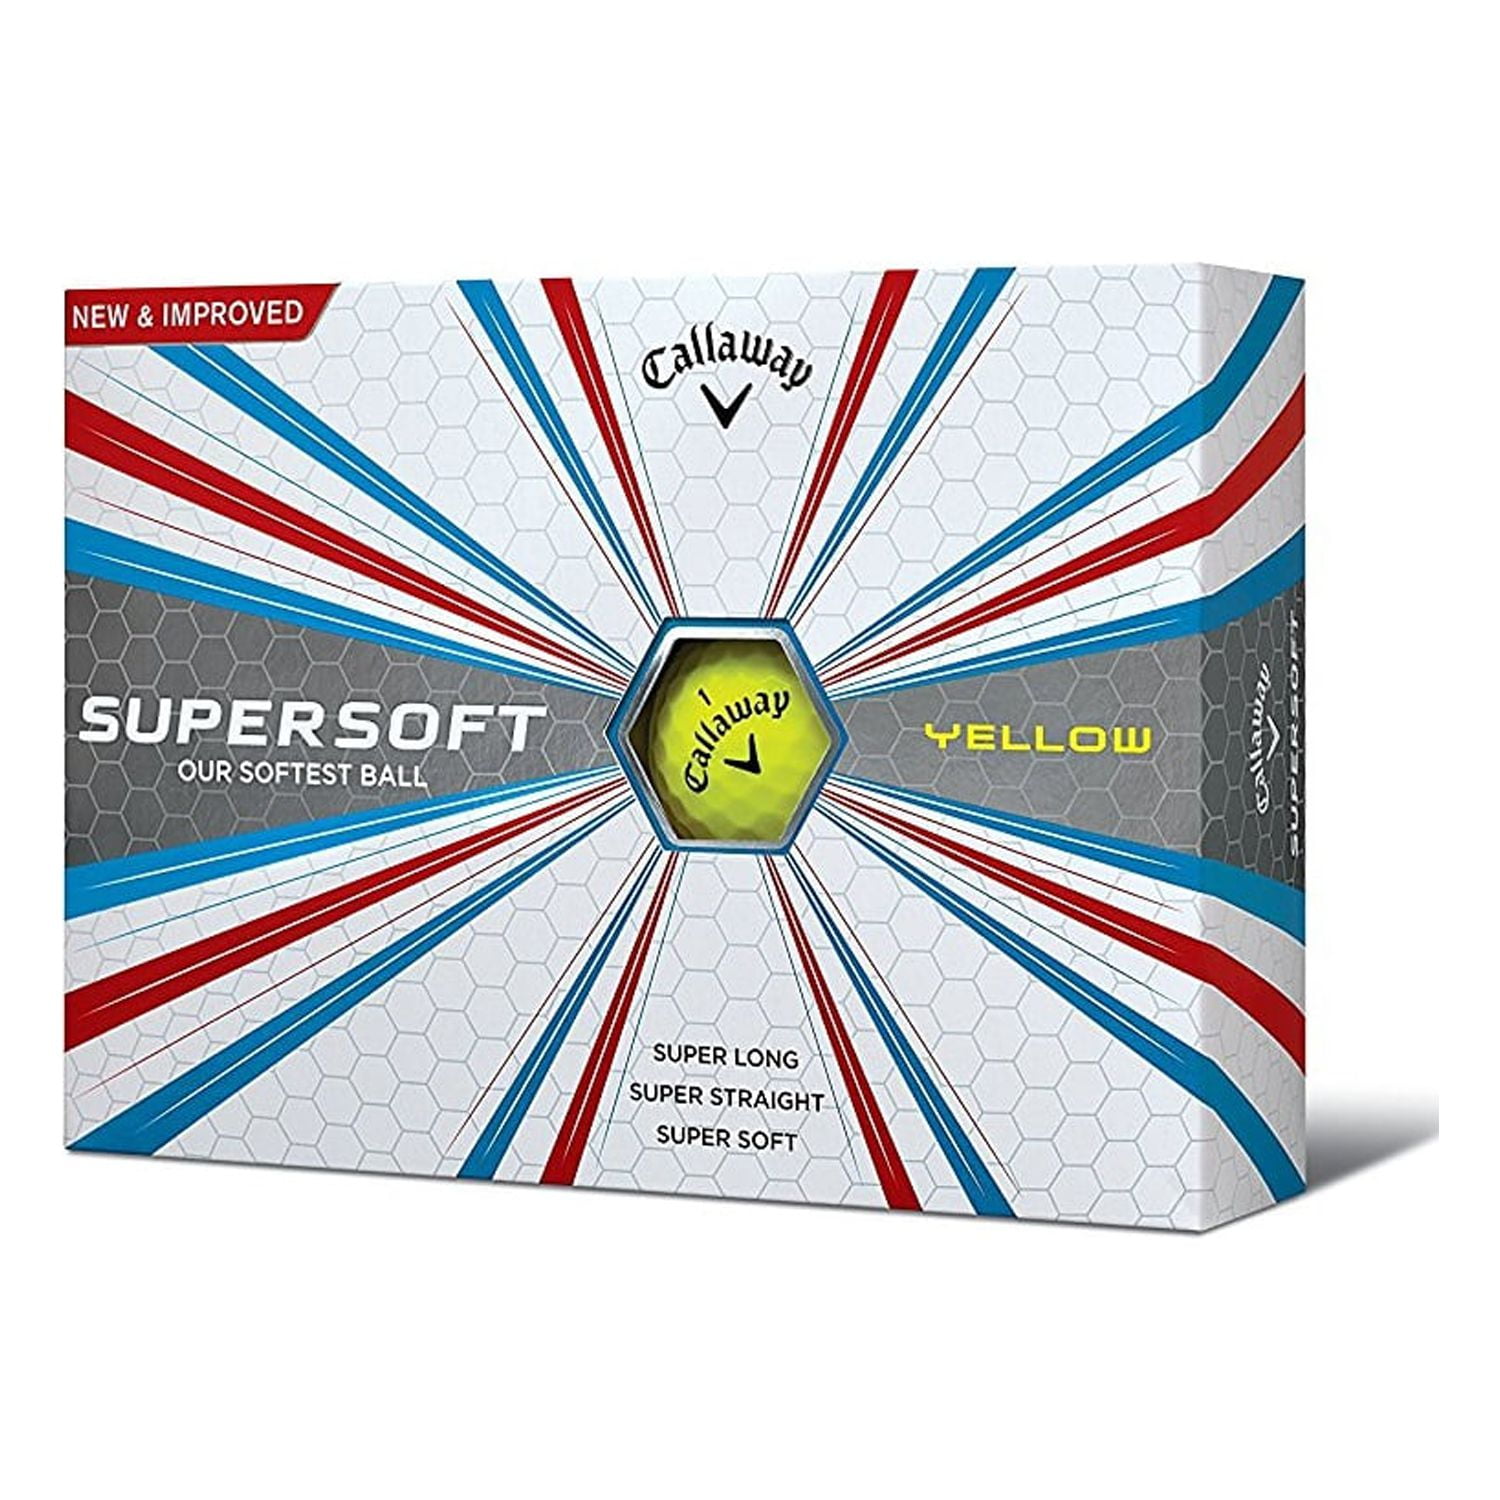 Callaway Supersoft Golf Balls, Prior Generation, (One Dozen)